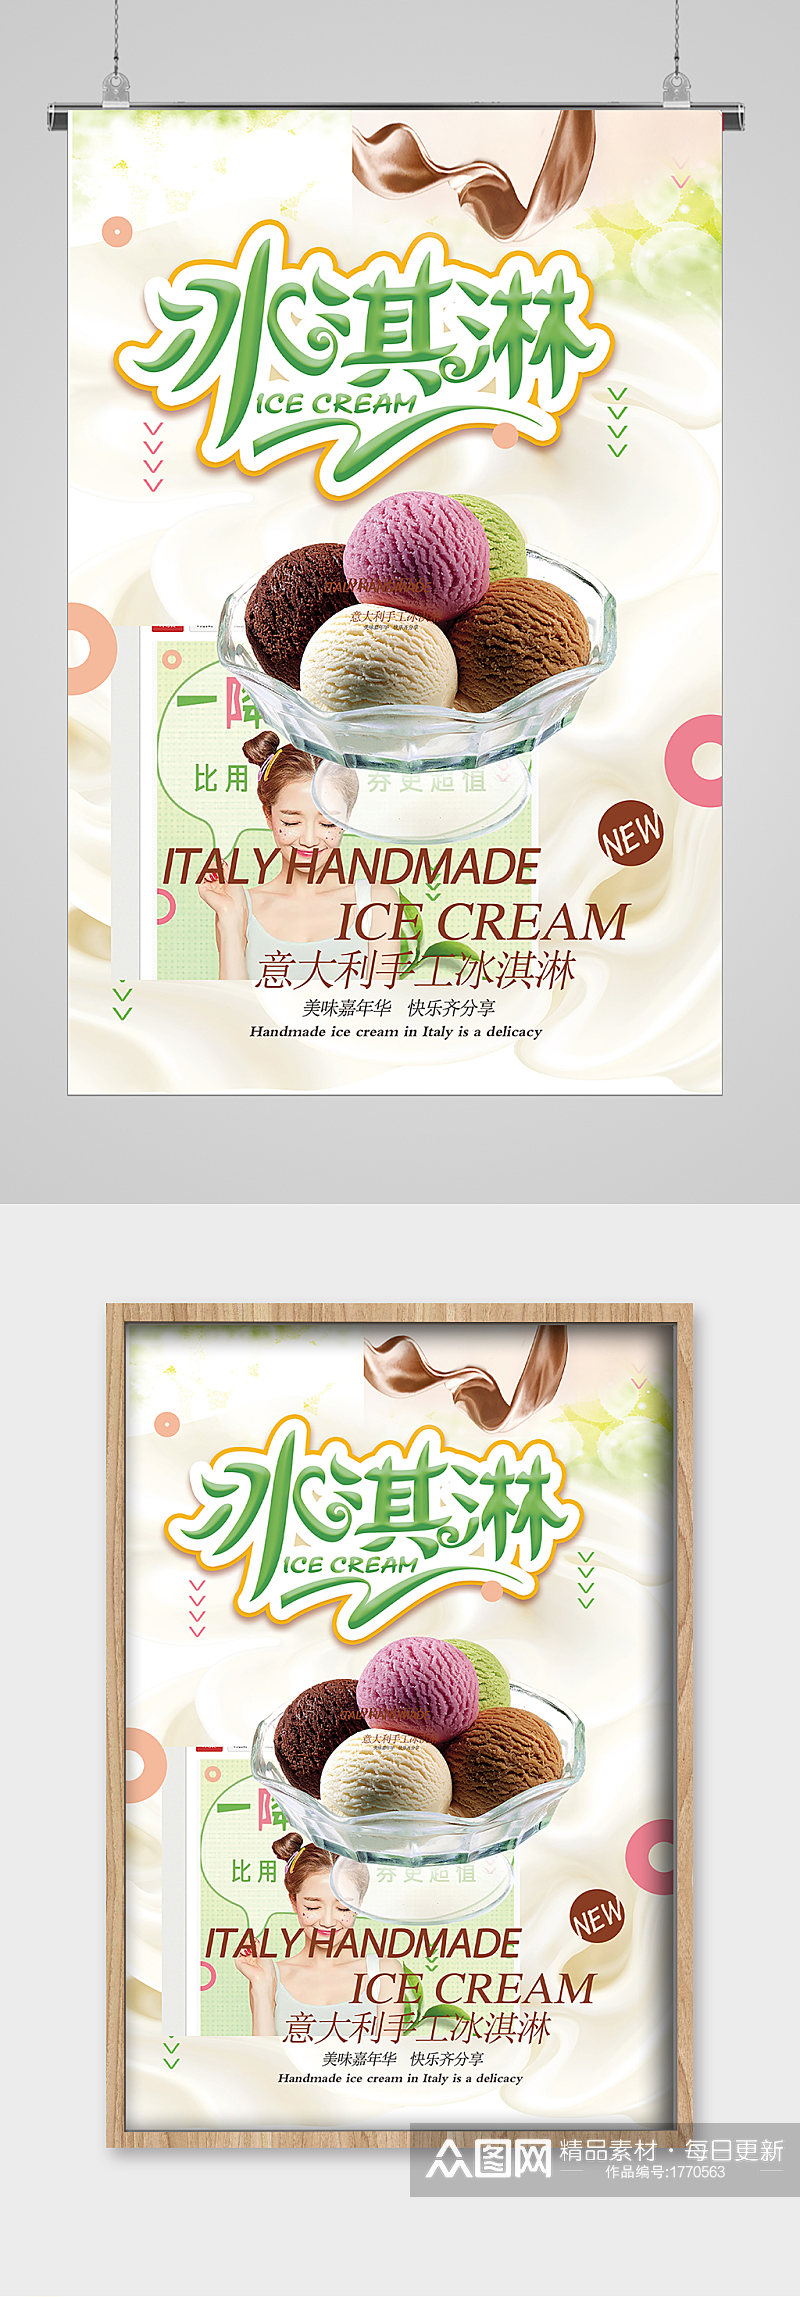 清爽夏日意大利冰淇淋海报素材